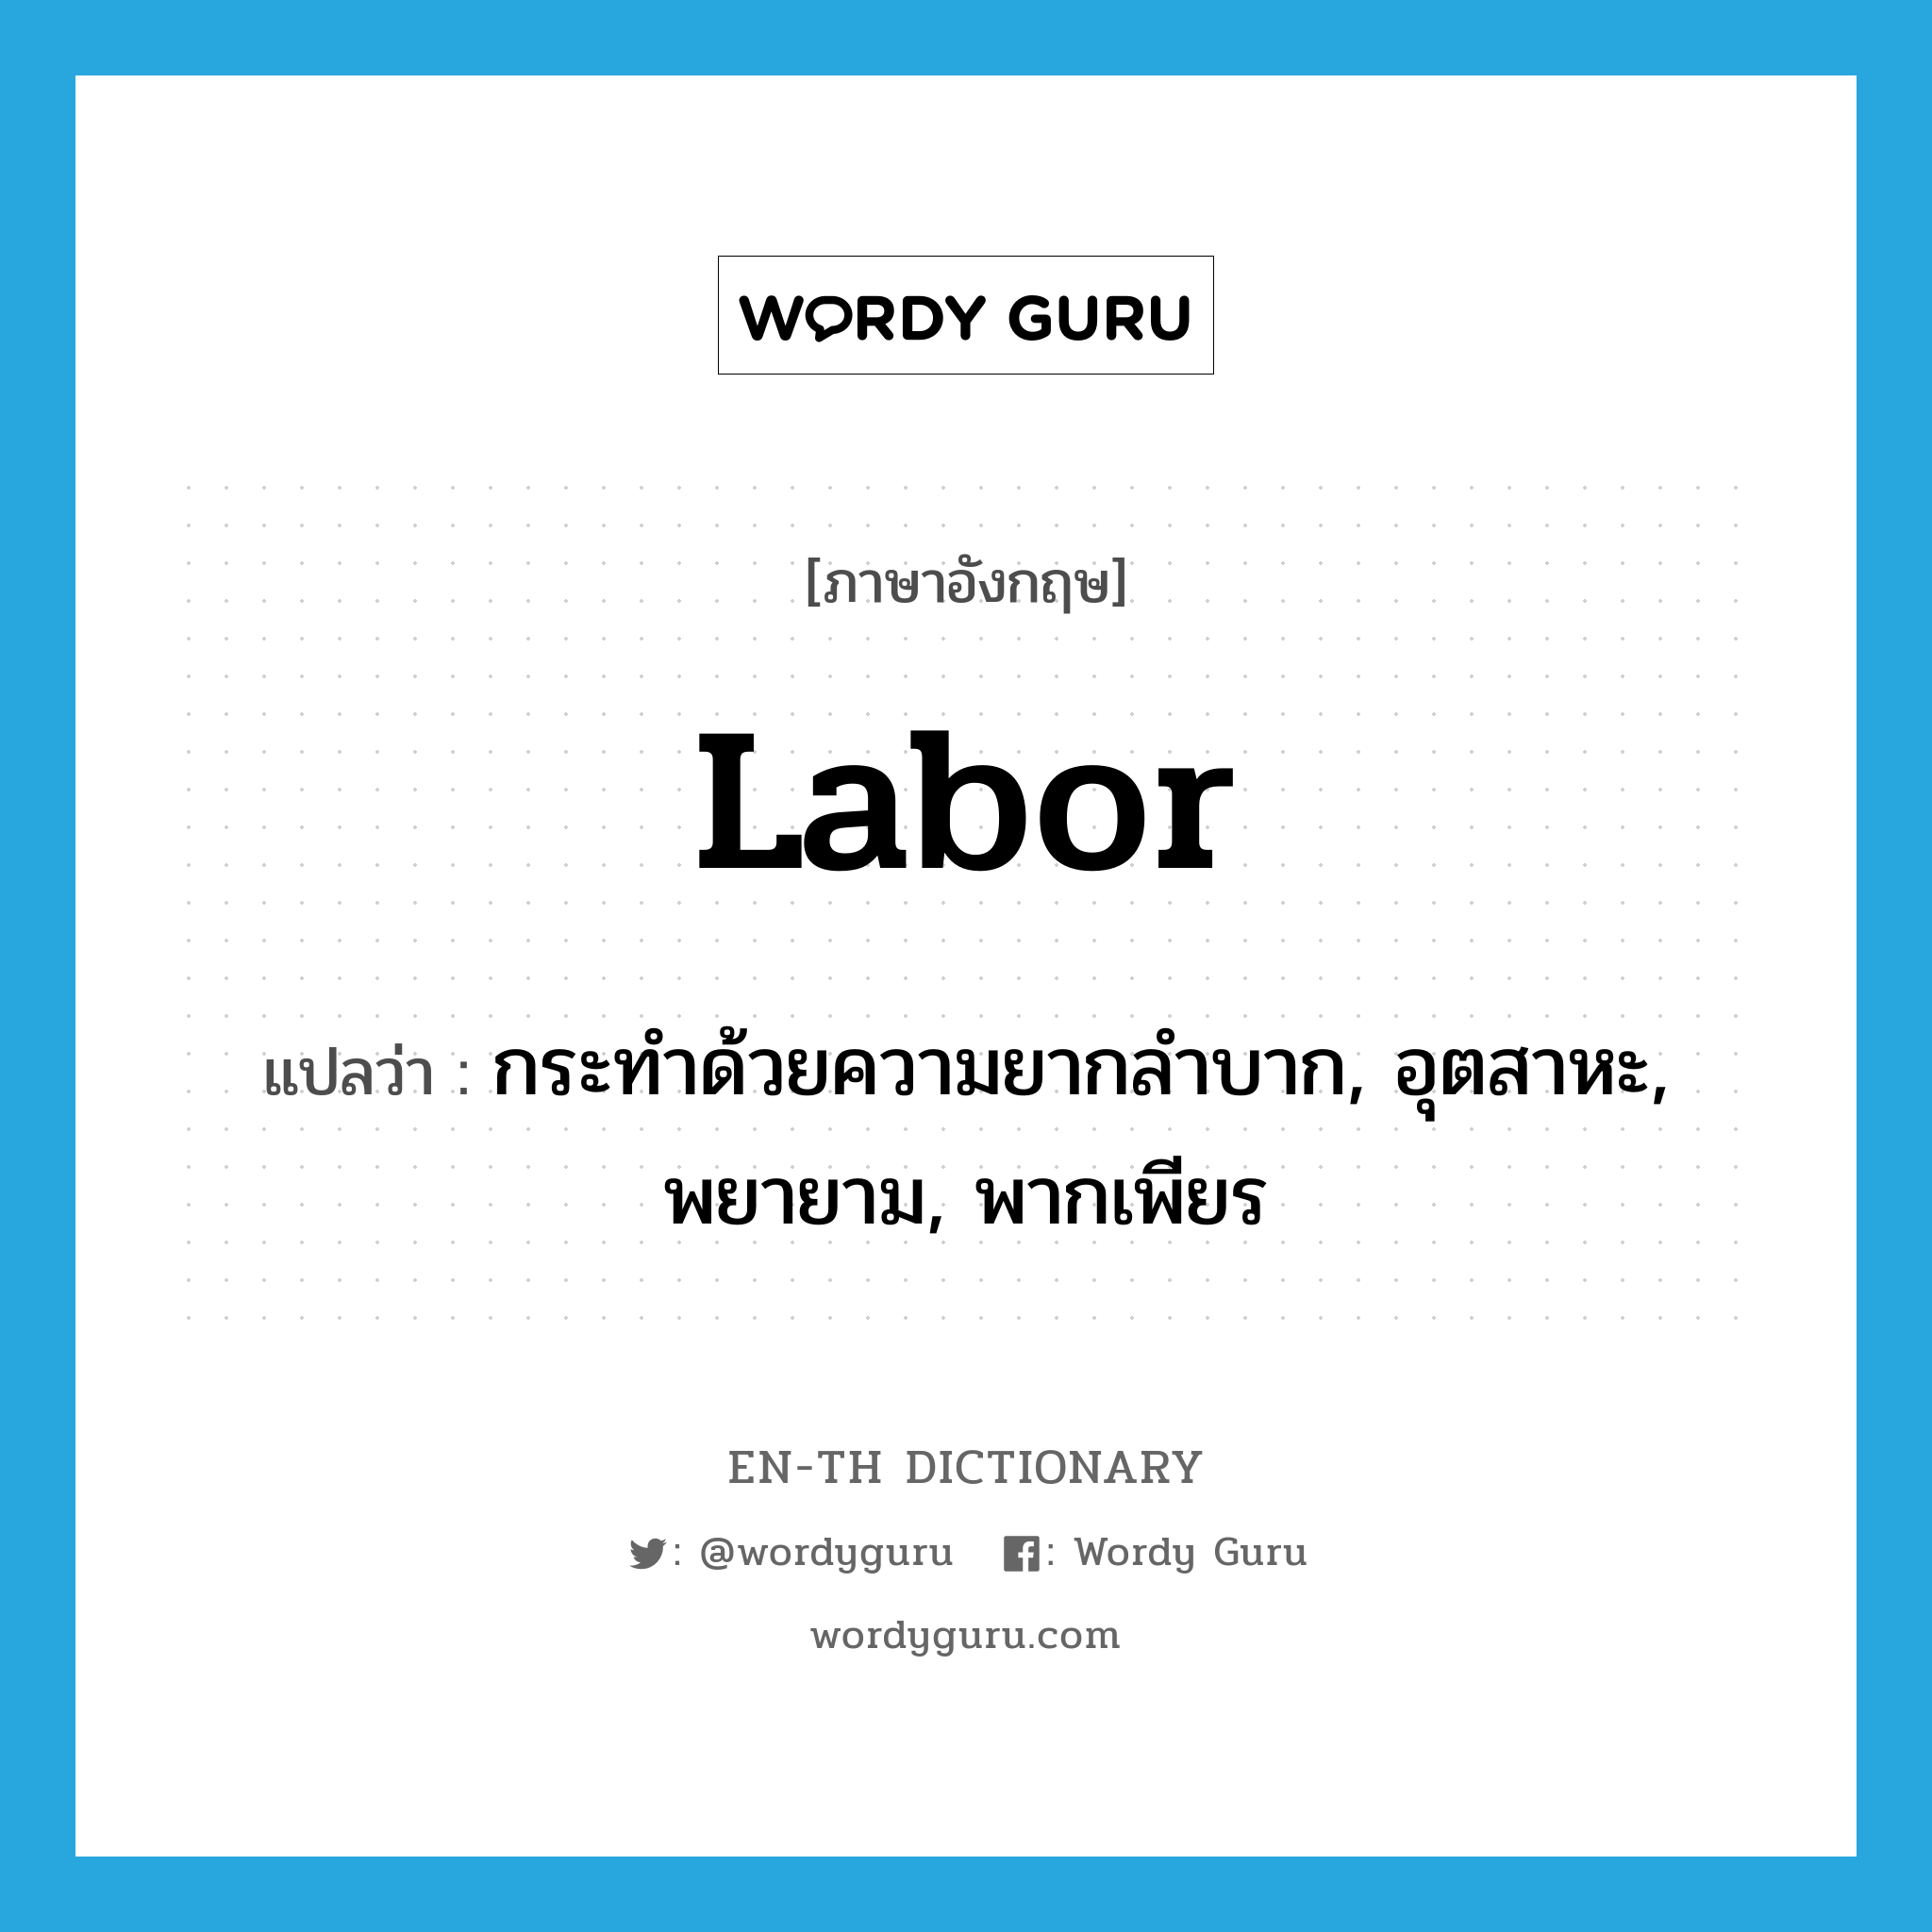 labor แปลว่า?, คำศัพท์ภาษาอังกฤษ labor แปลว่า กระทำด้วยความยากลำบาก, อุตสาหะ, พยายาม, พากเพียร ประเภท VI หมวด VI